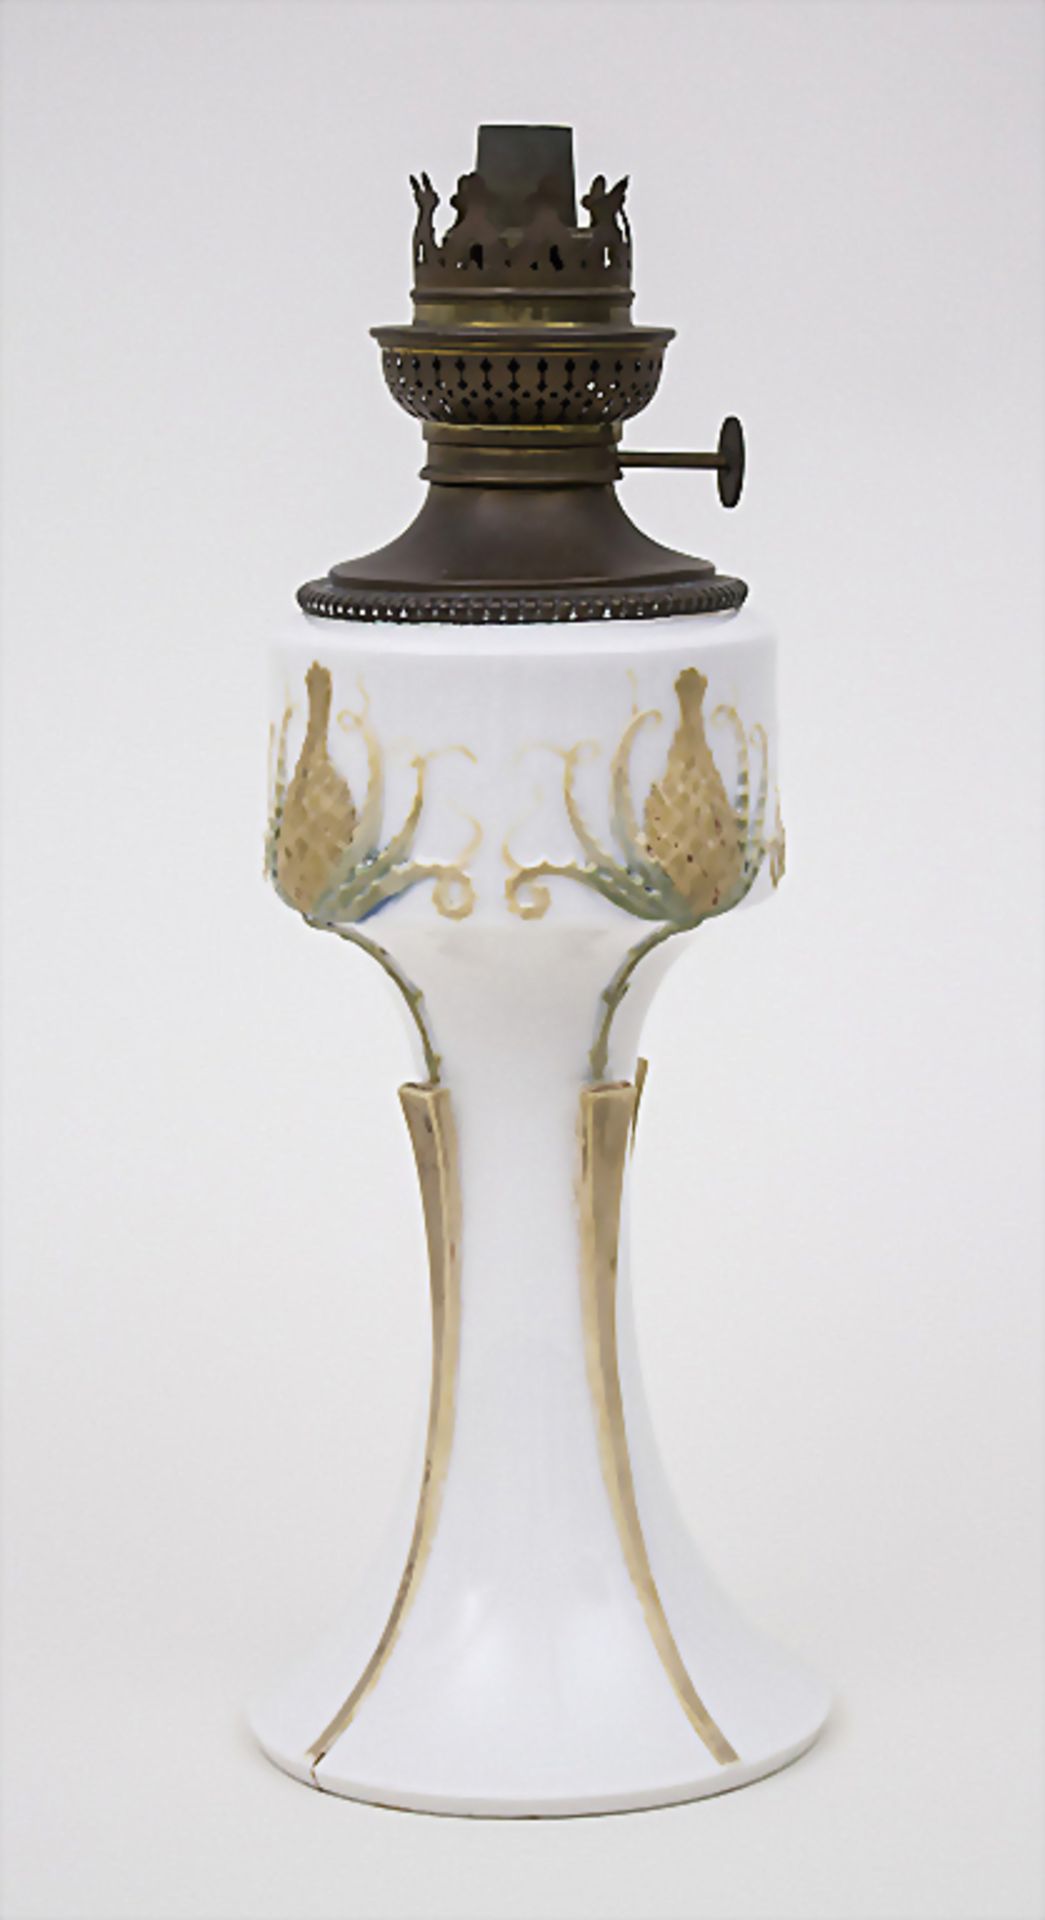 Jugendstil Petroleum Lampe 'Ciboire' (Distel) / An Art Nouveau Oil Lamp, Sèvres, 1904